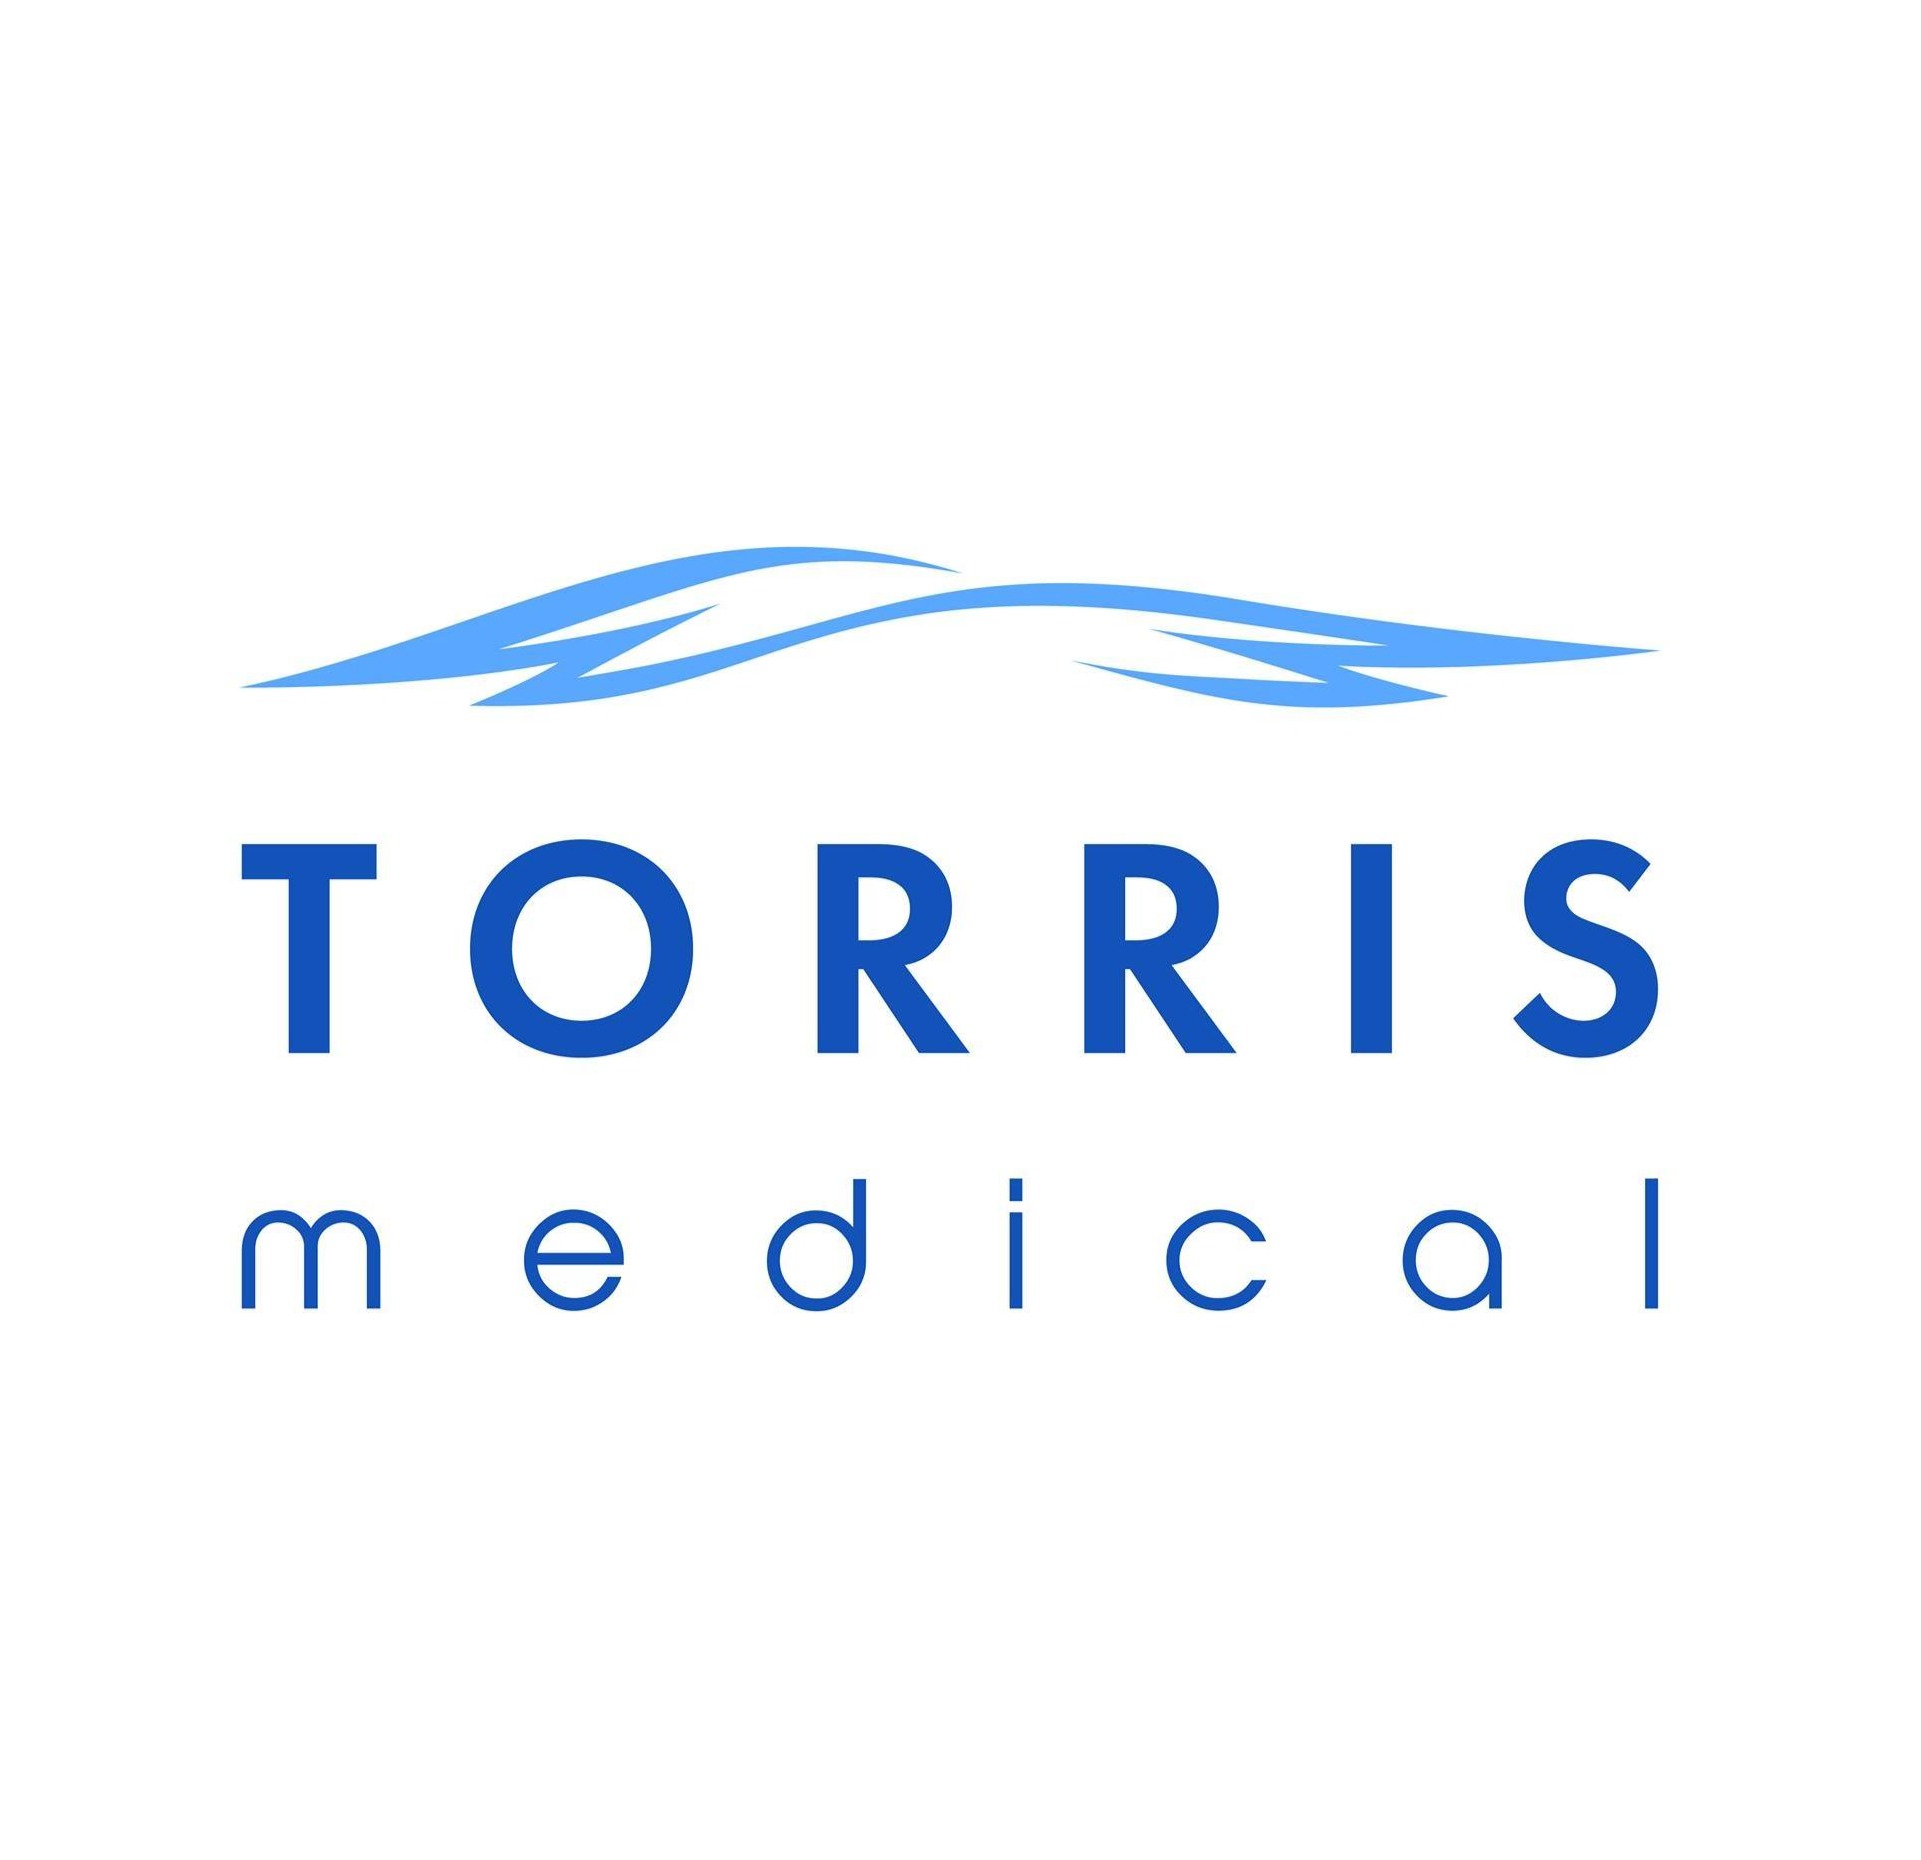 Torris medical